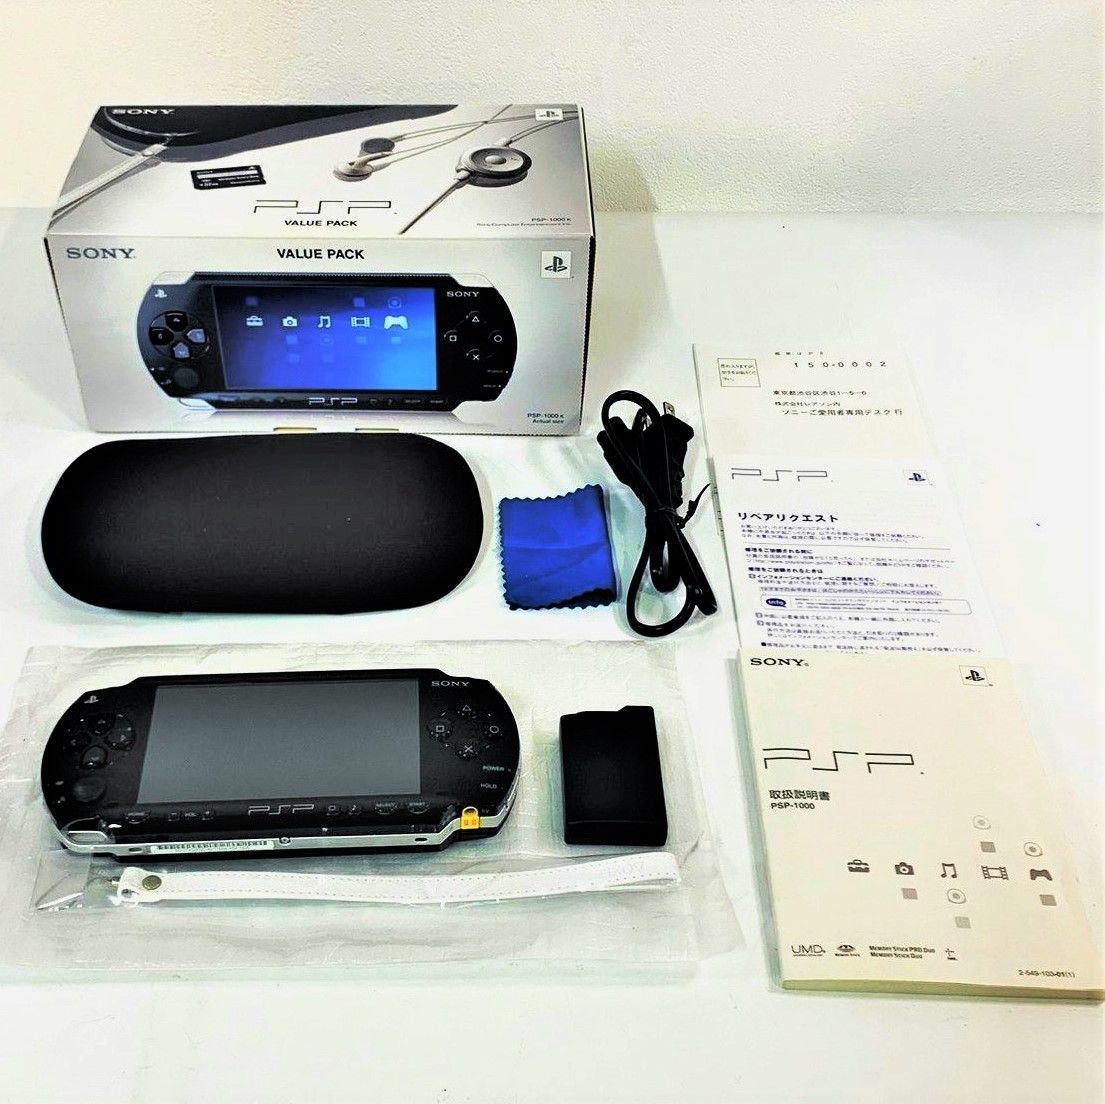 SONY PSP バリューパック 本体 PSP-1000 ブラック 黒 バッテリーパック ケーブル 取扱説明書